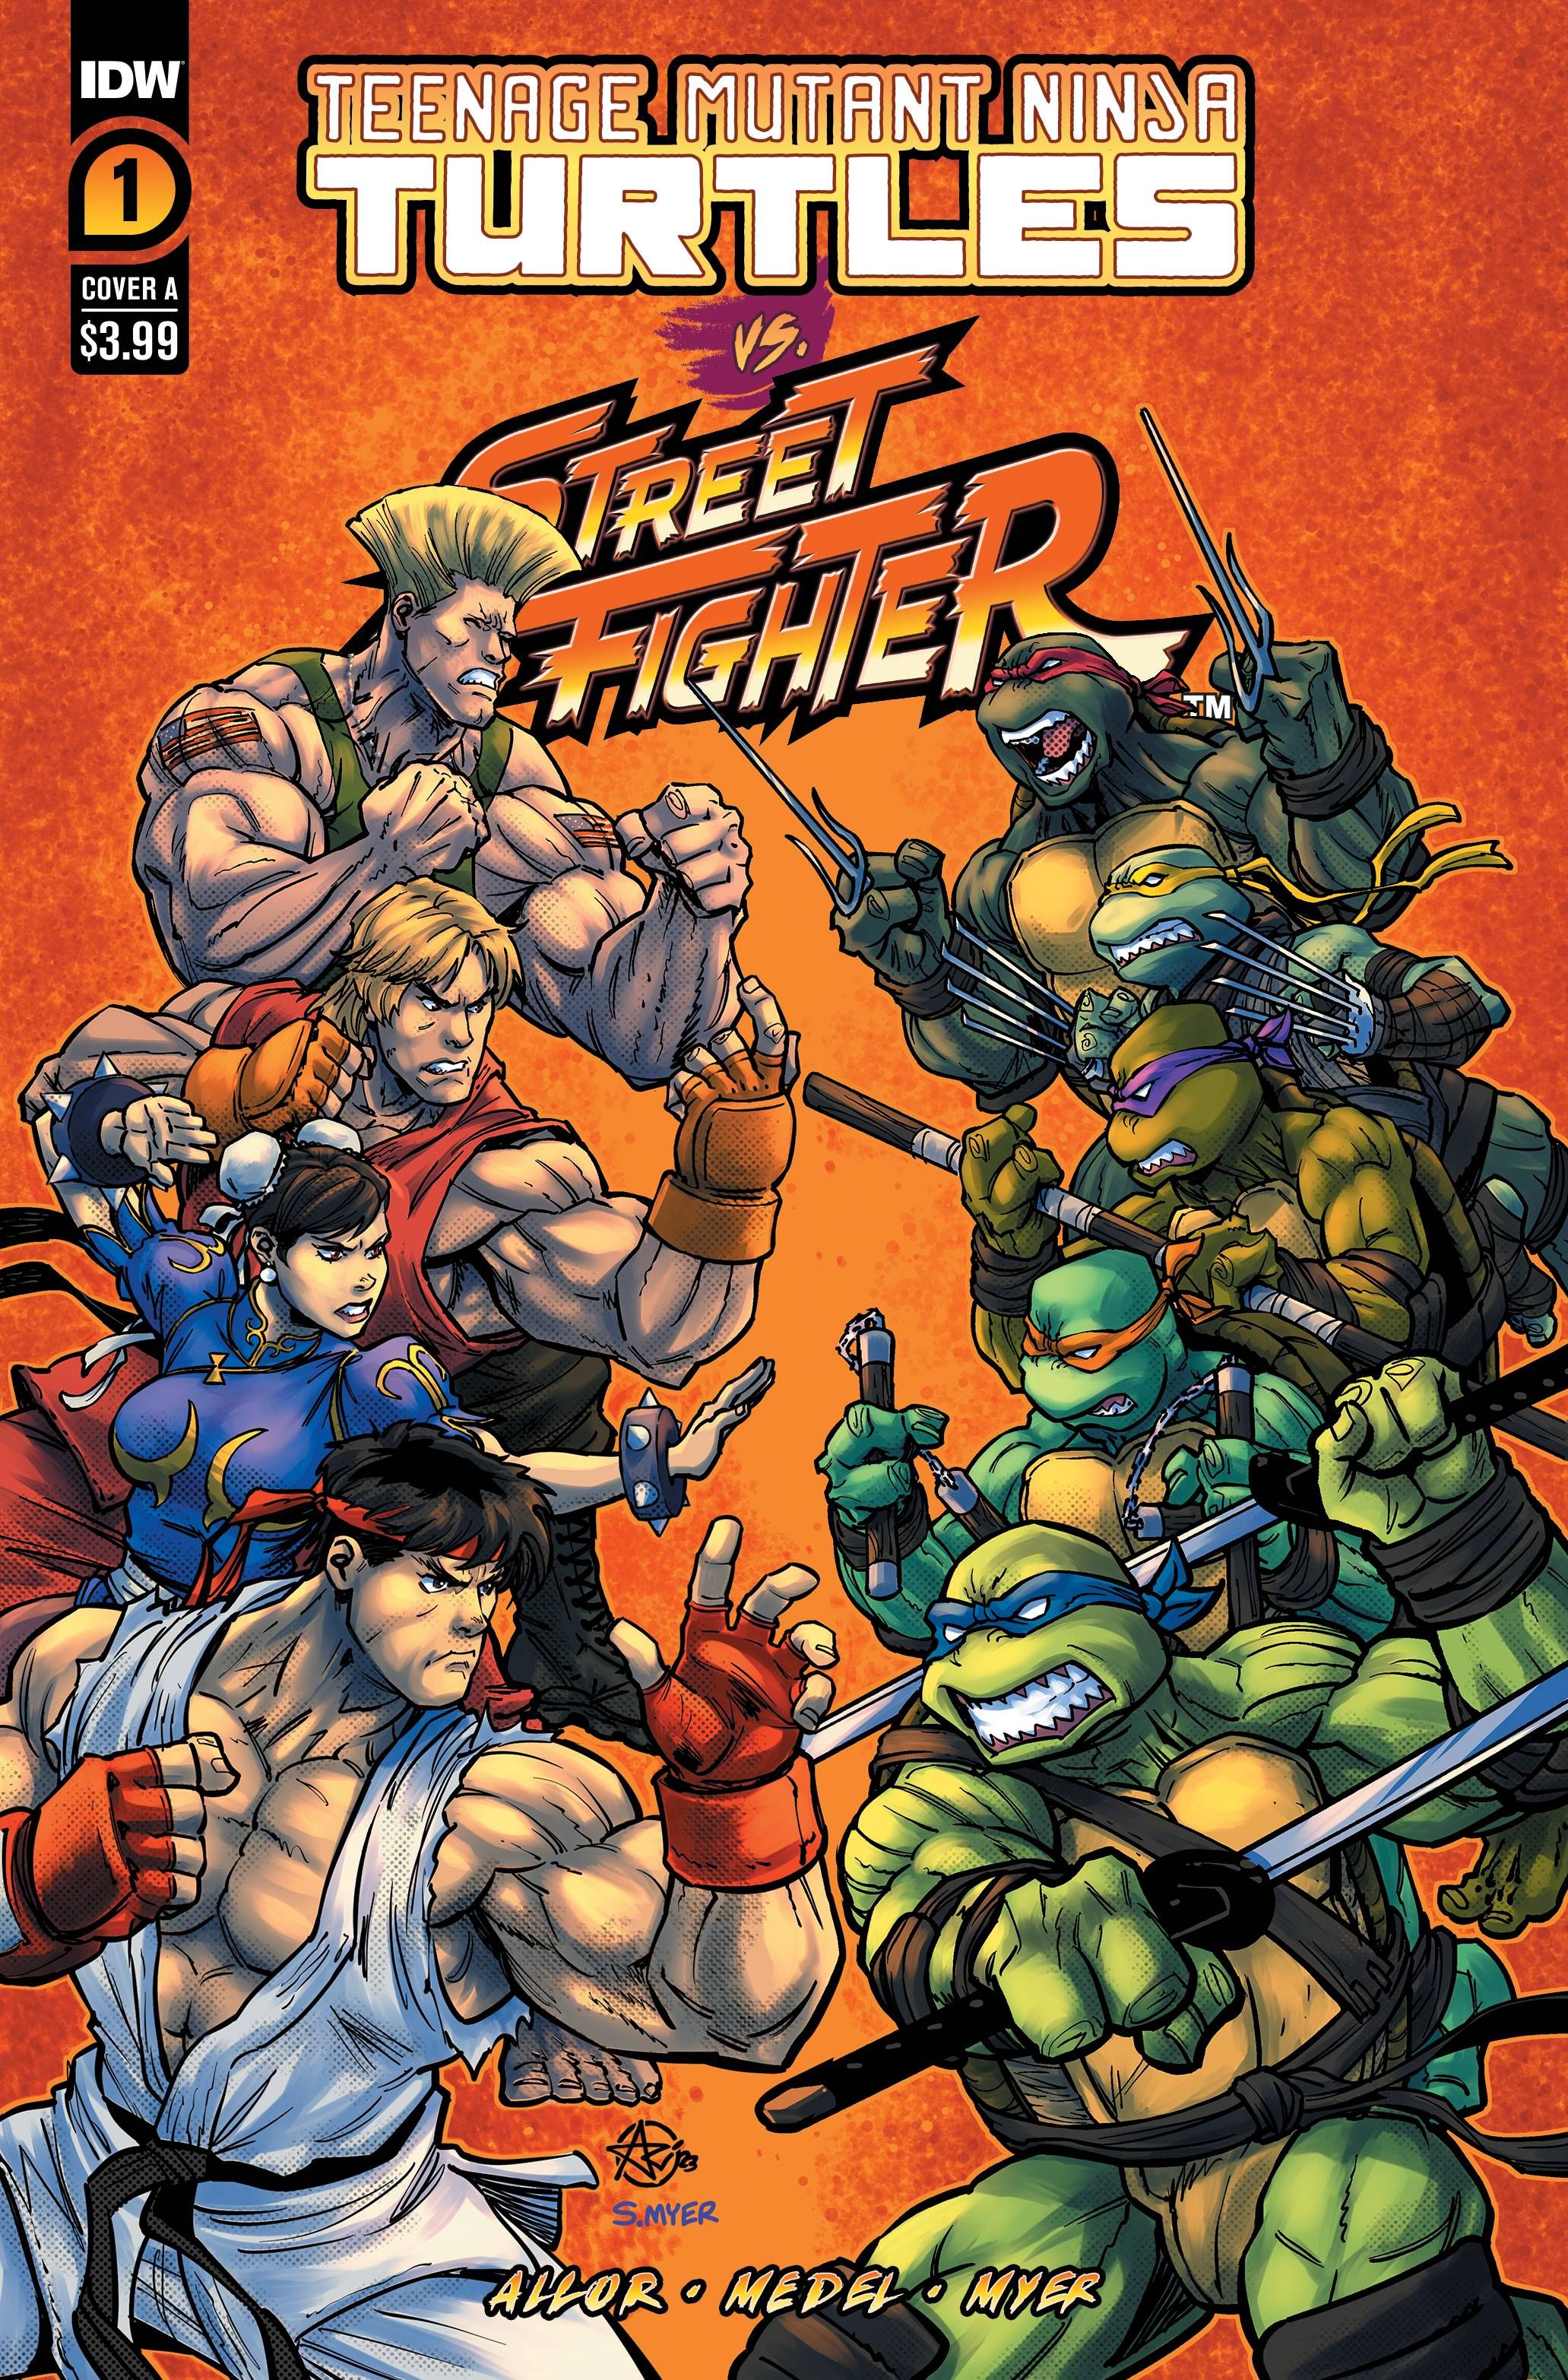 TMNT vs Street Fighter #1 Cover